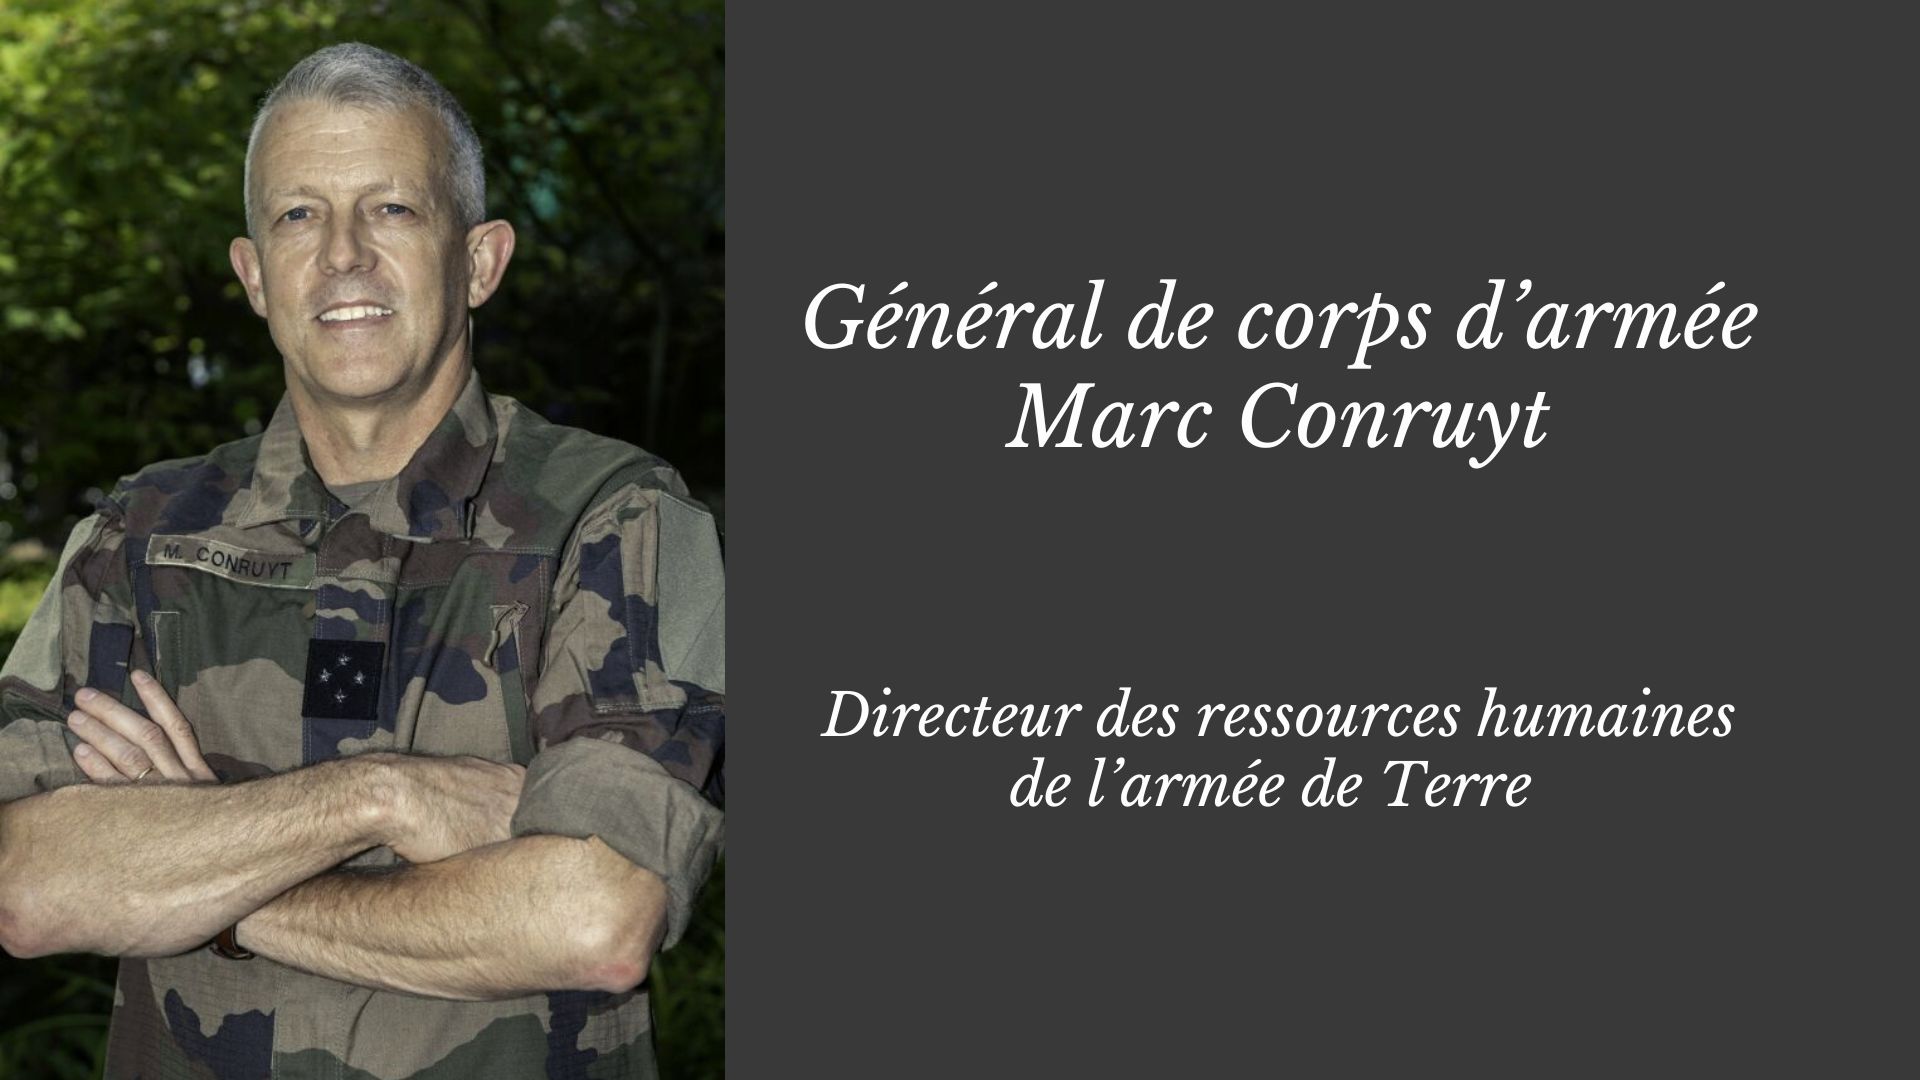 Général de corps d’armée Marc Conruyt, DRHAT